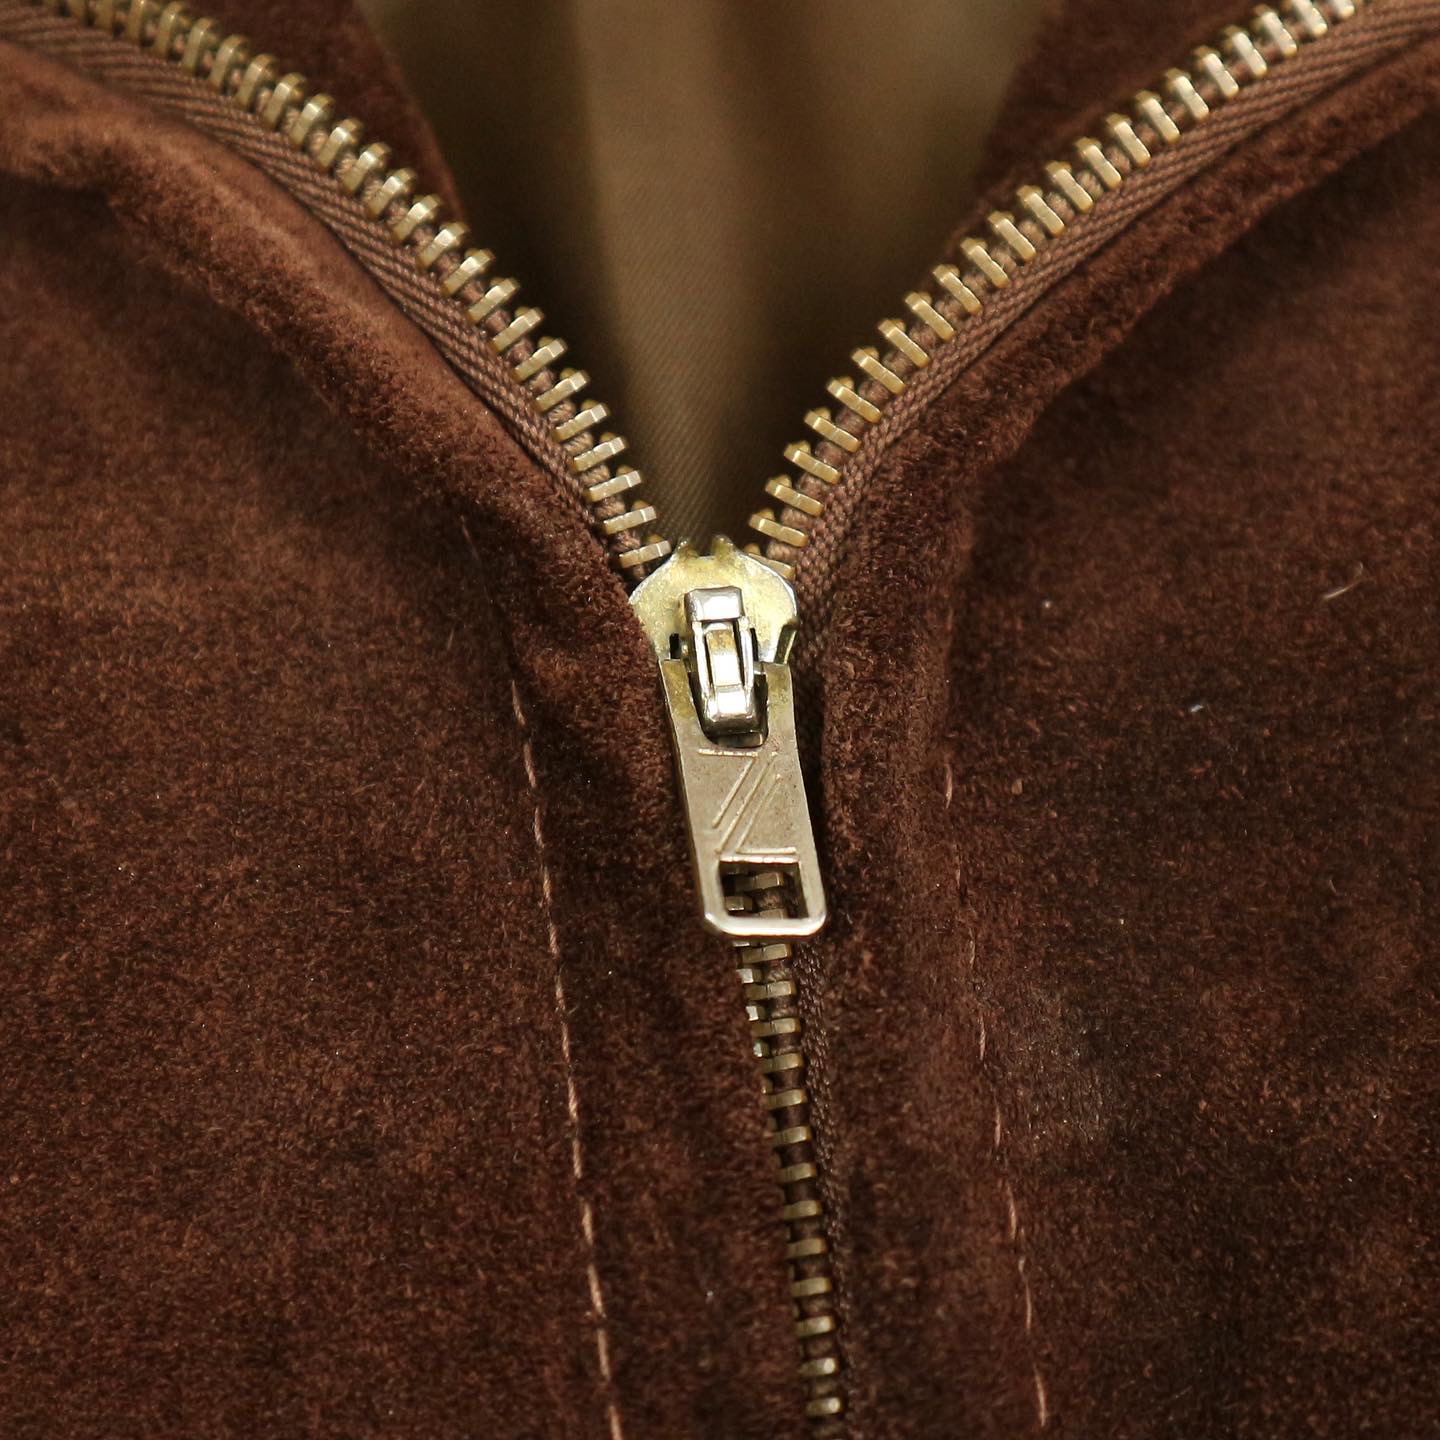 Schott Suede Leather-collar Jacket Size M